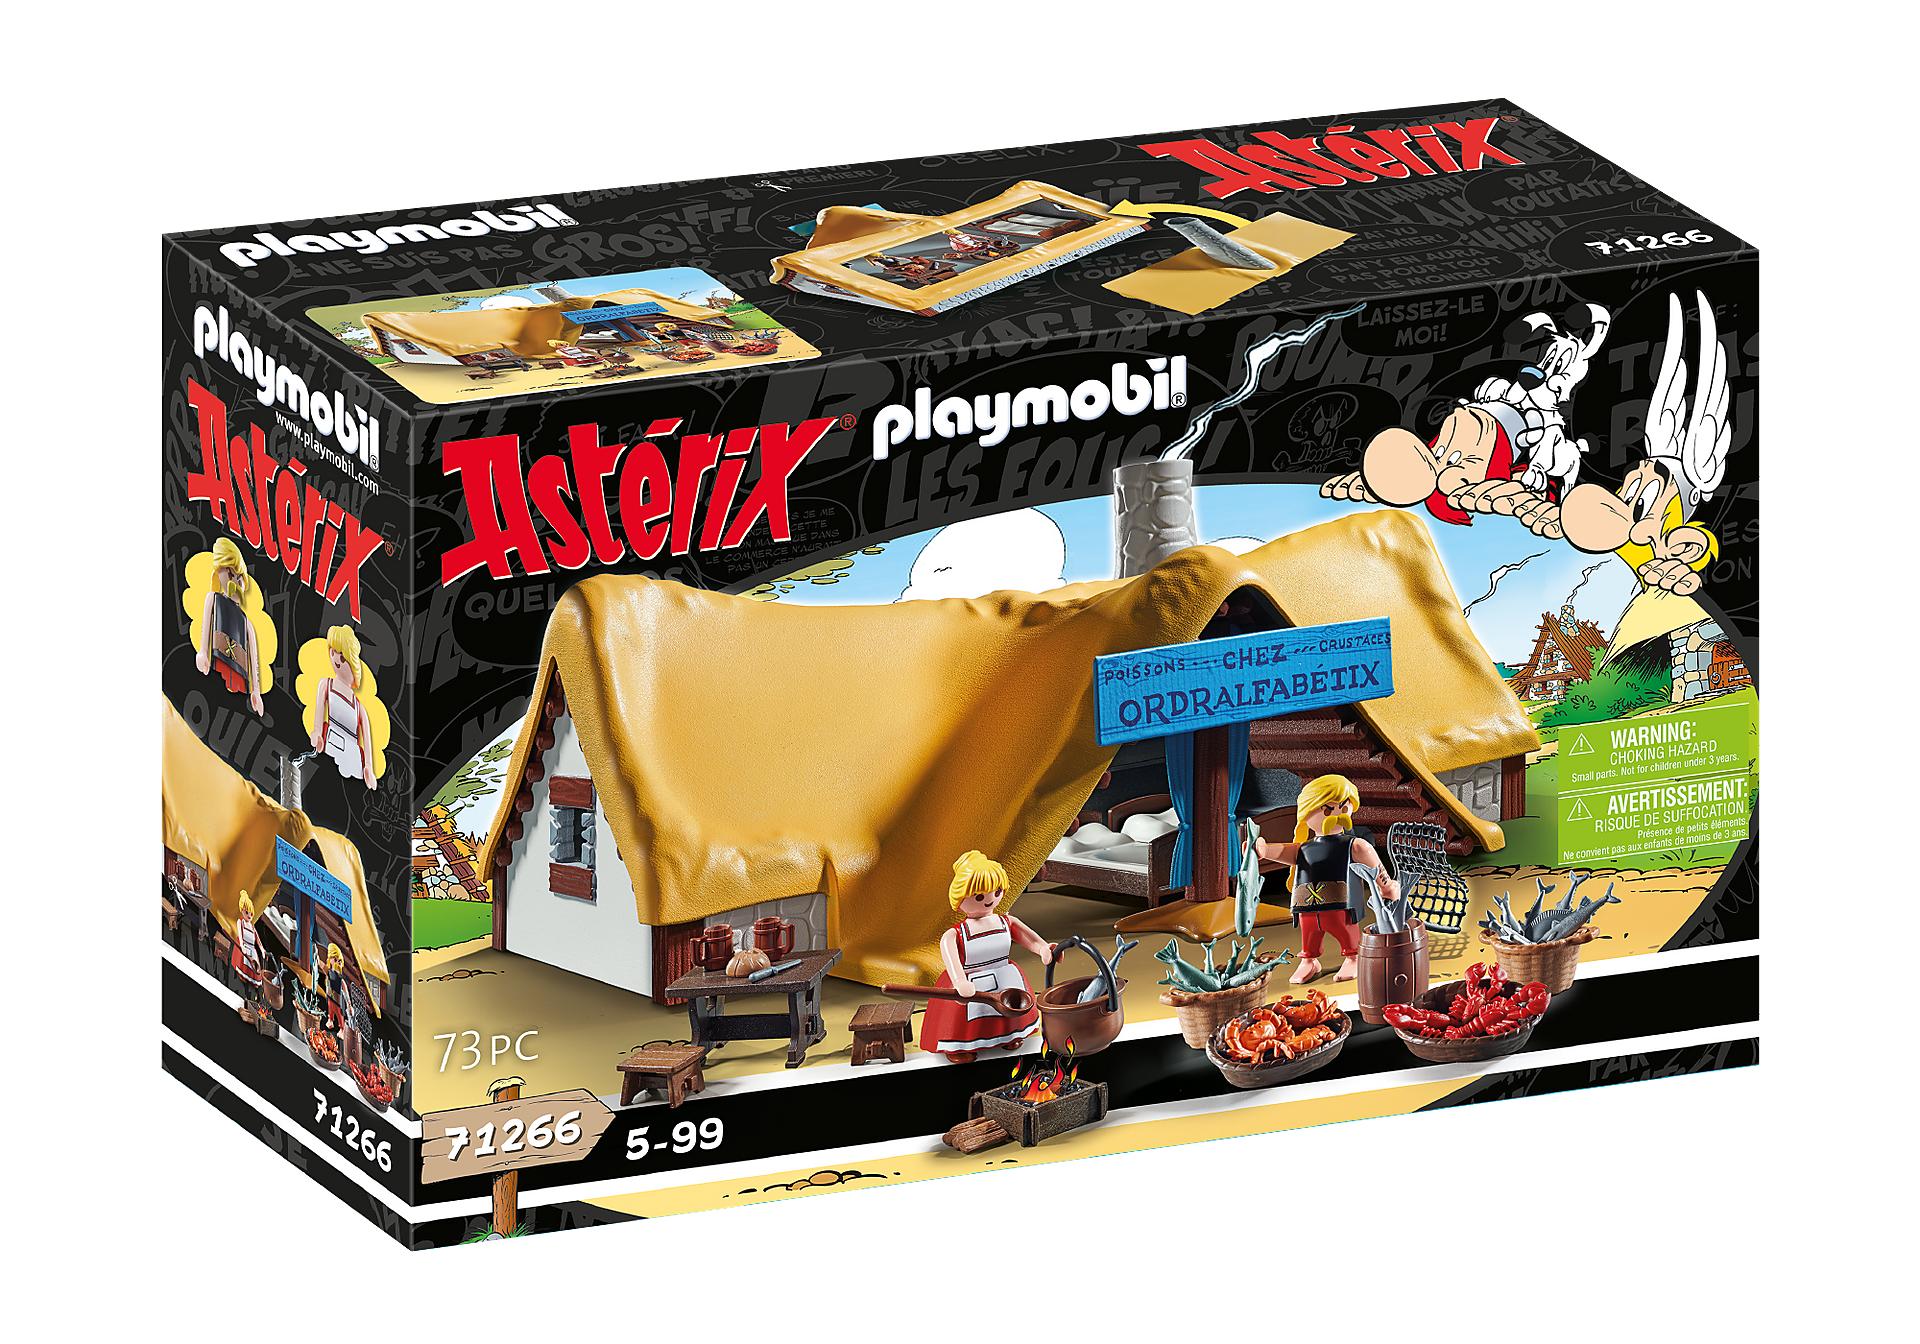 Playmobil de Asterix y Obelix nuevos - Playmundo